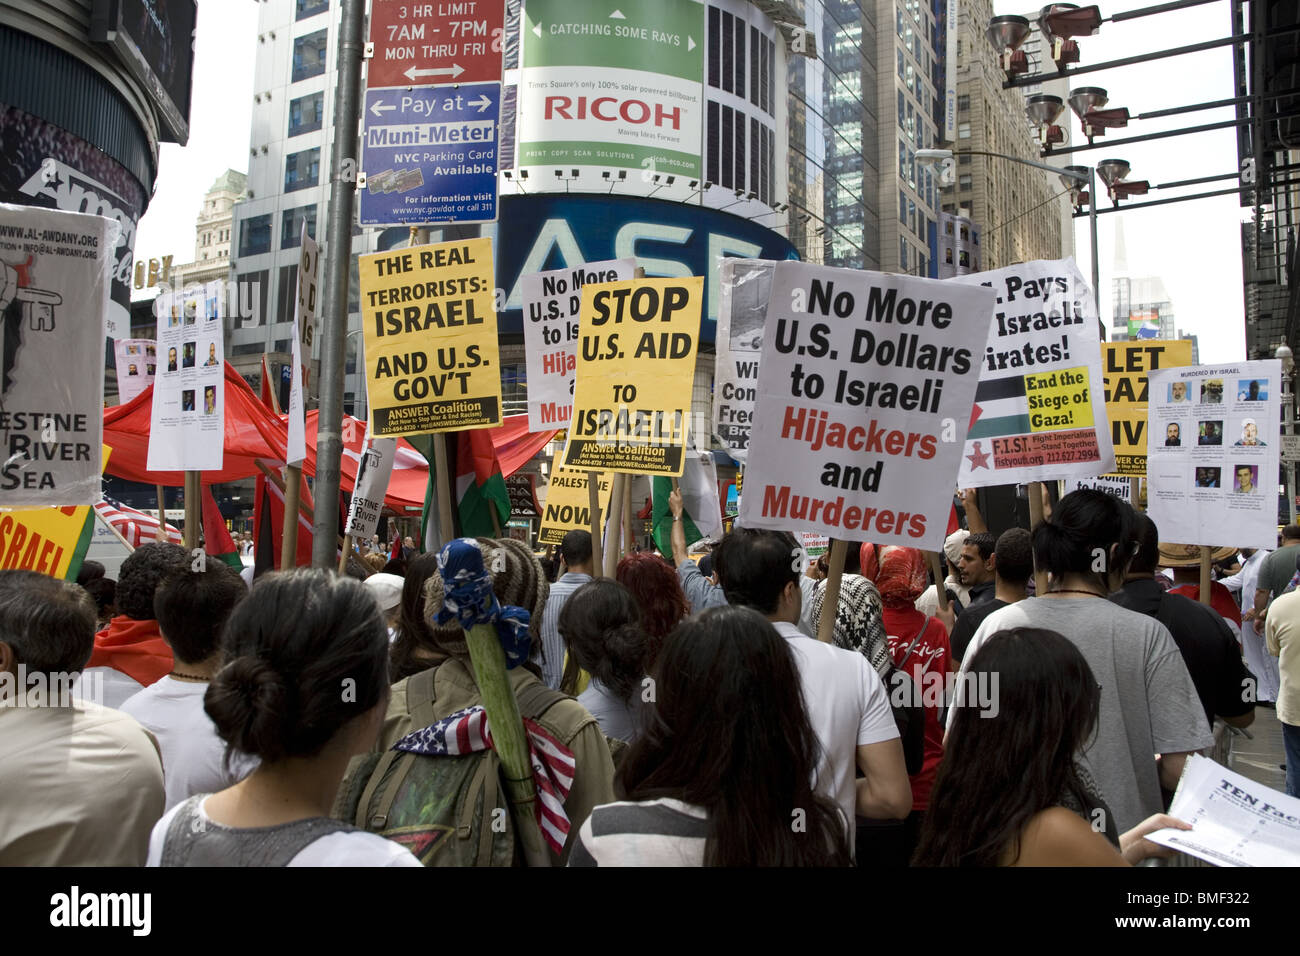 La città di New York, 4 Giugno 2010: grande manifestazione contro Israele il brutale attacco contro la striscia di Gaza internazionale flottiglia. Foto Stock